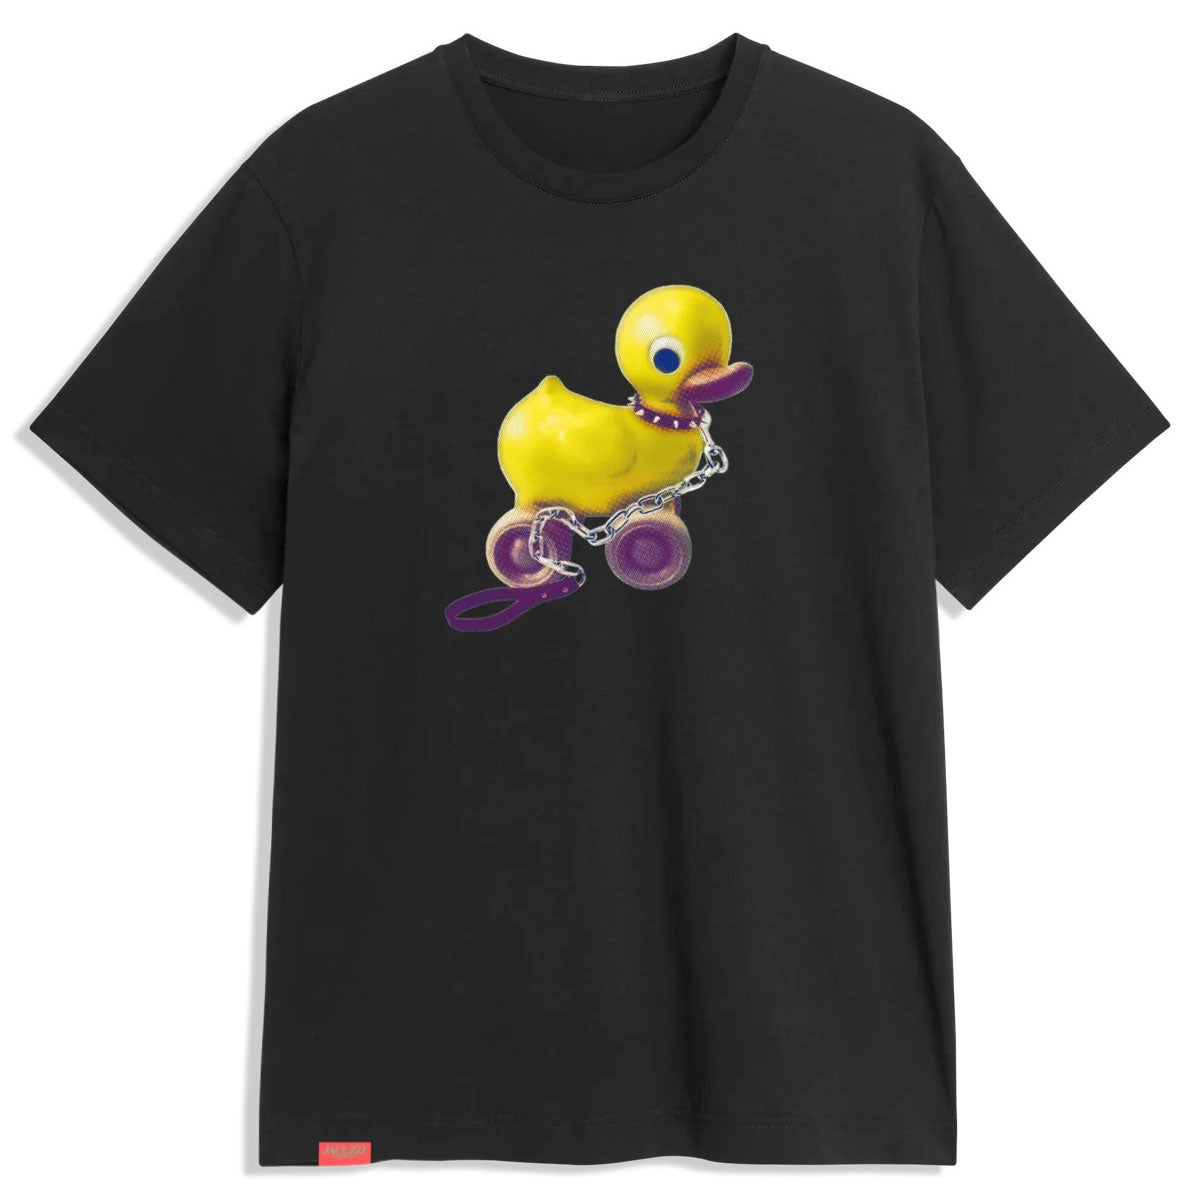 Jacuzzi Duck Premium T-Shirt - Black image 1